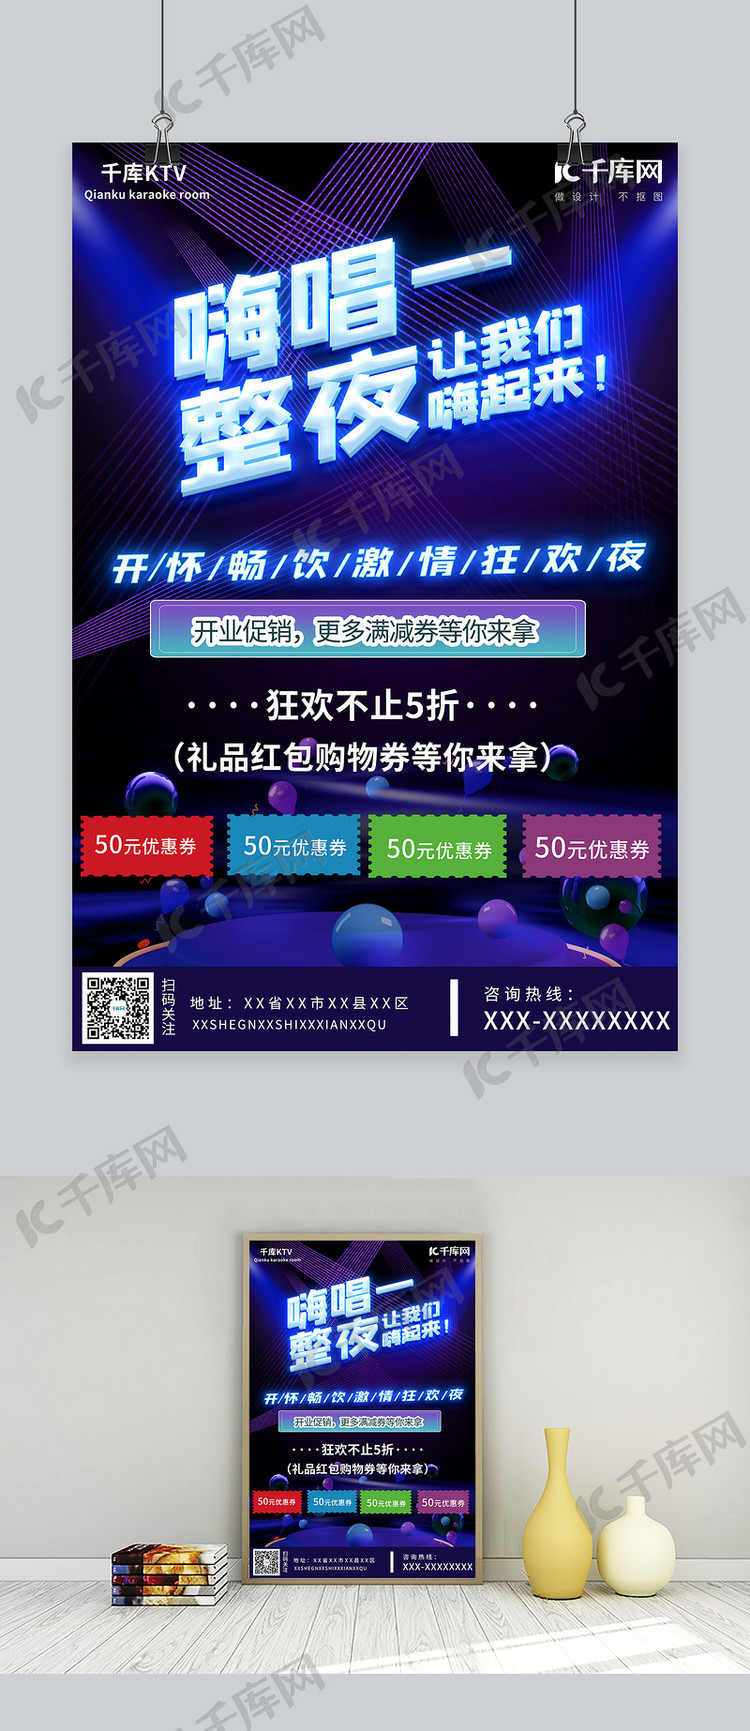 紫色大气最新KTV开业狂欢宣传海报